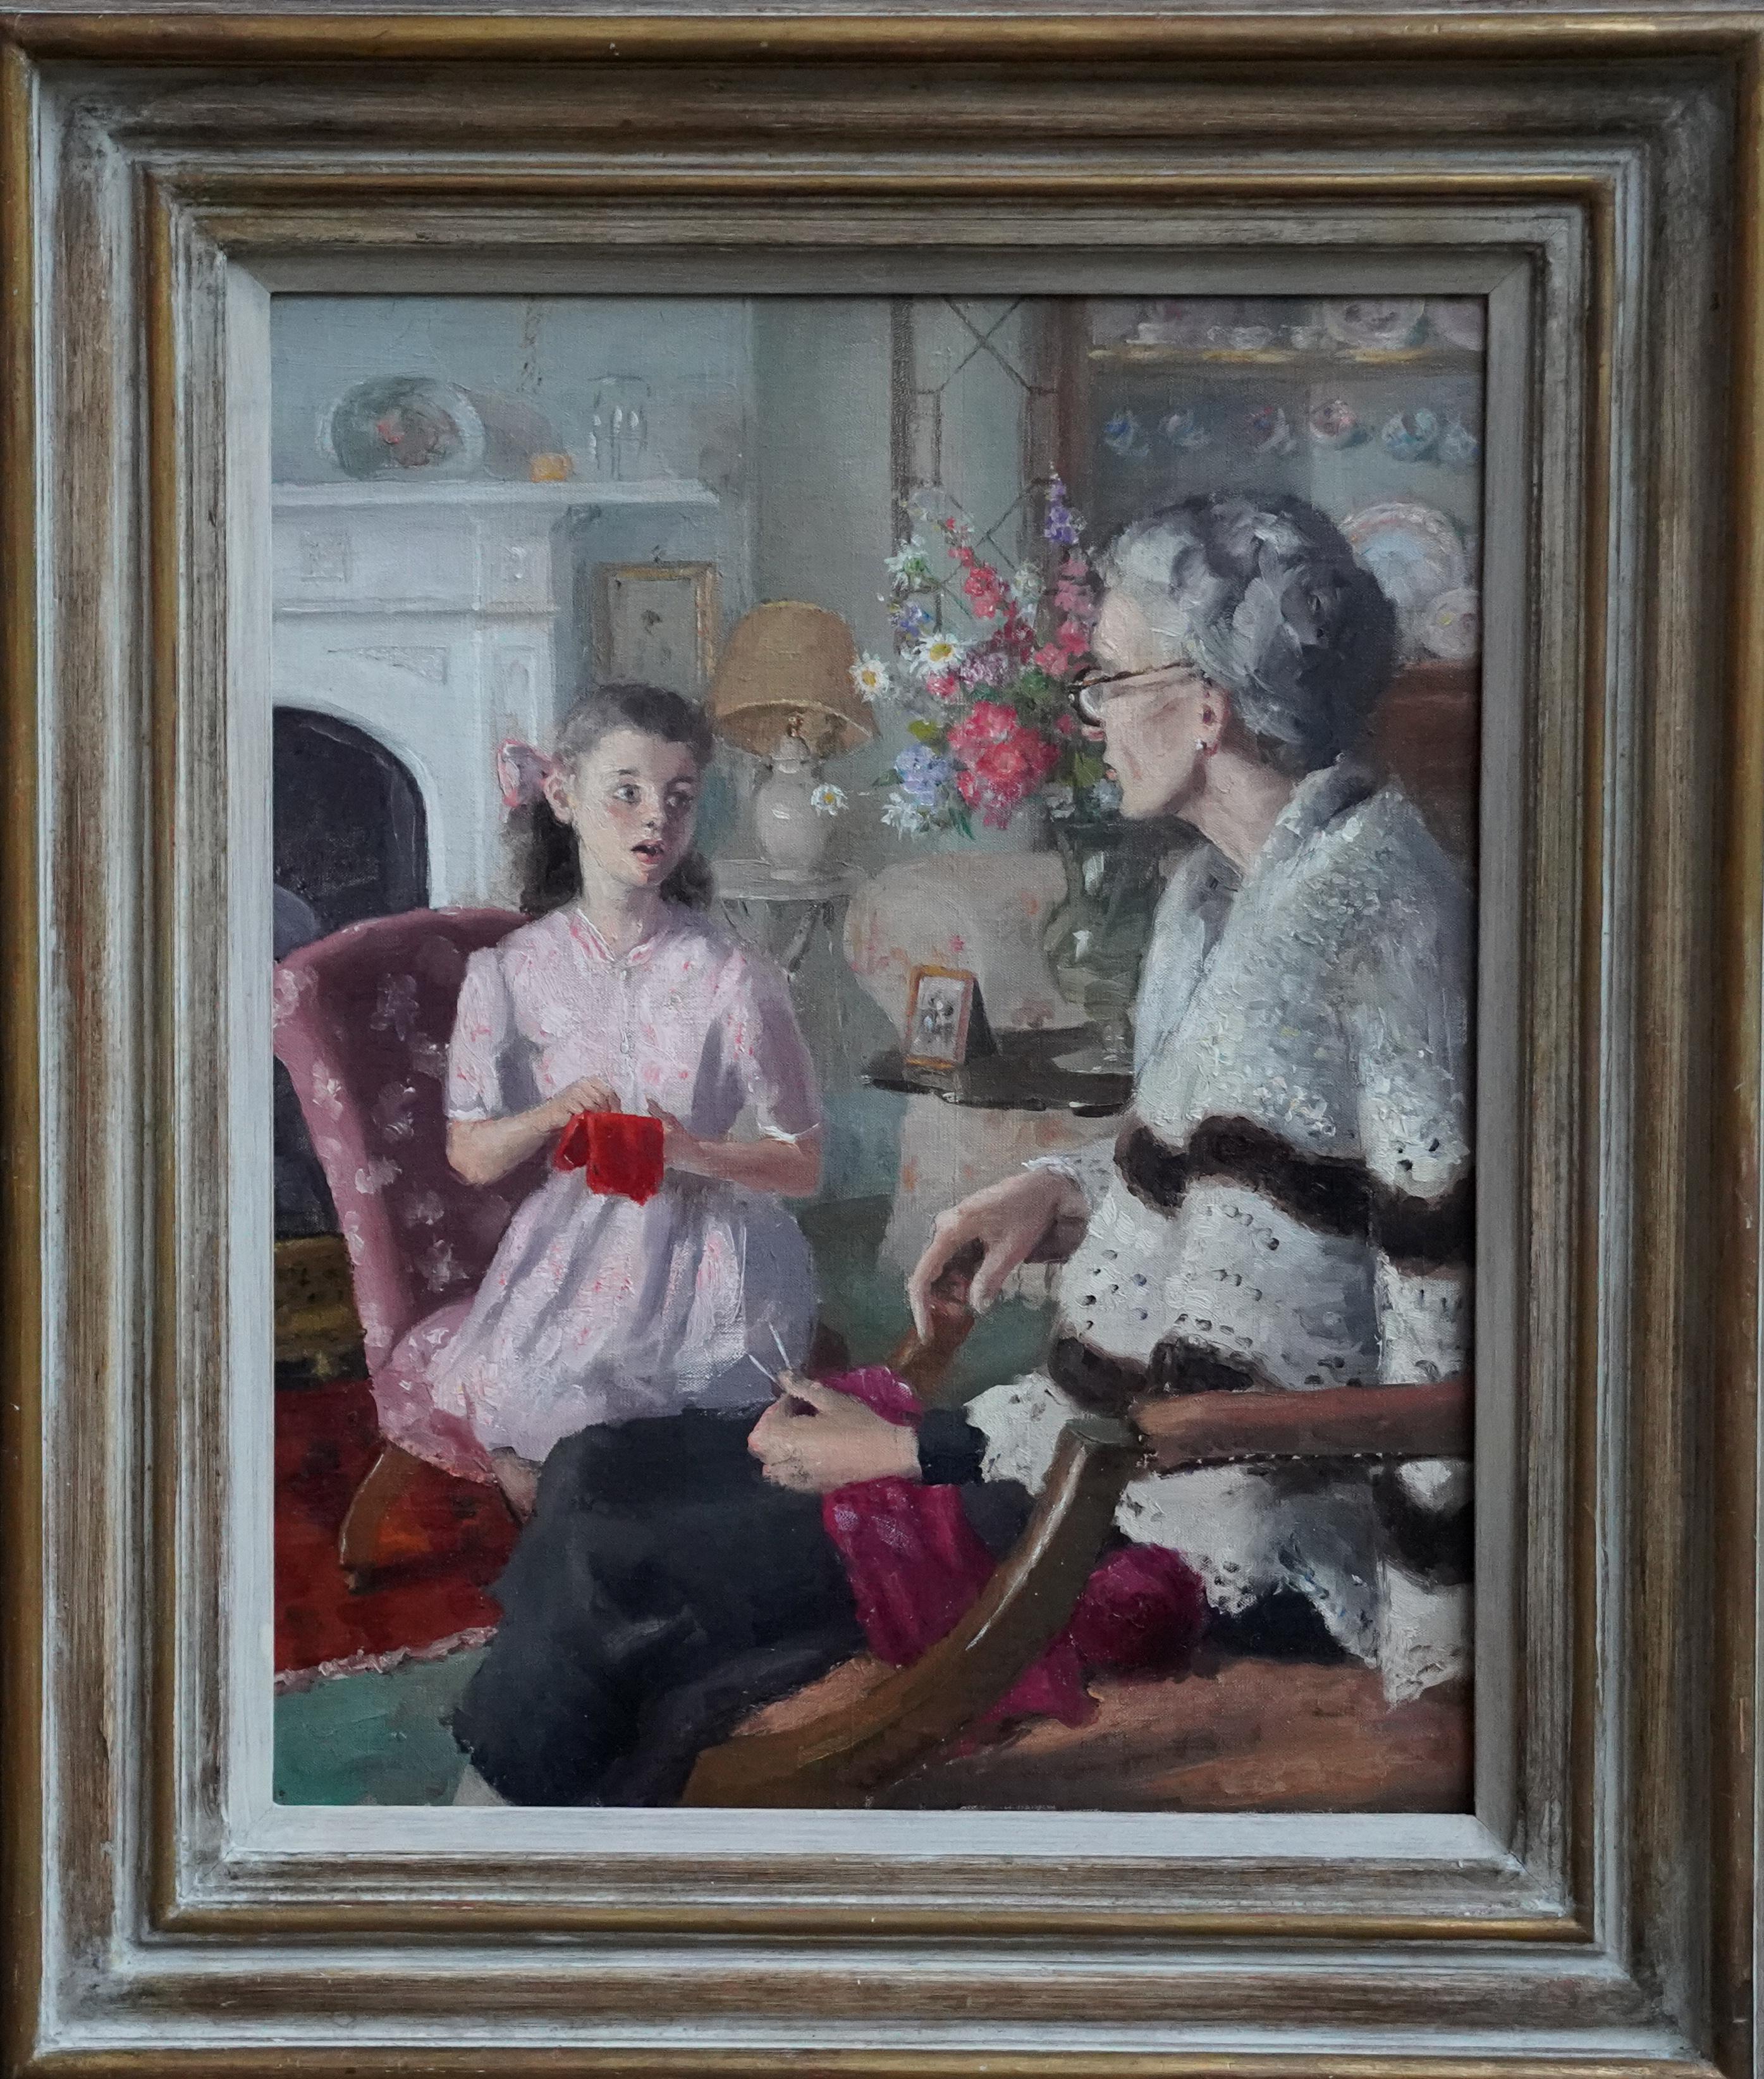 Grandma und Großmutter in einem Interieur – britisches Porträt aus den 40er Jahren  Malerei